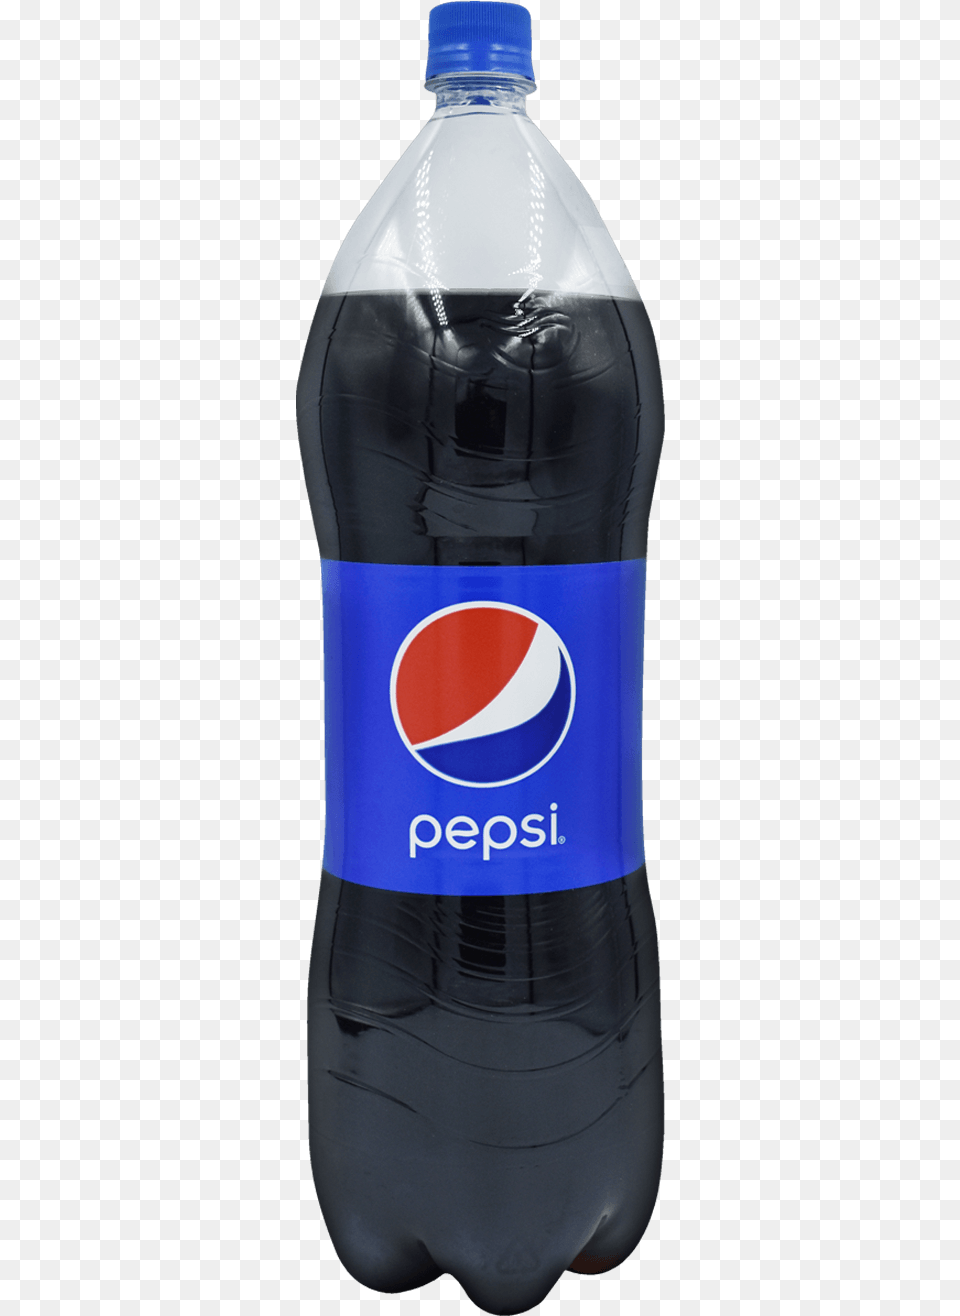 Pepsi Pet Bottle, Alcohol, Beer, Beverage, Pop Bottle Png Image